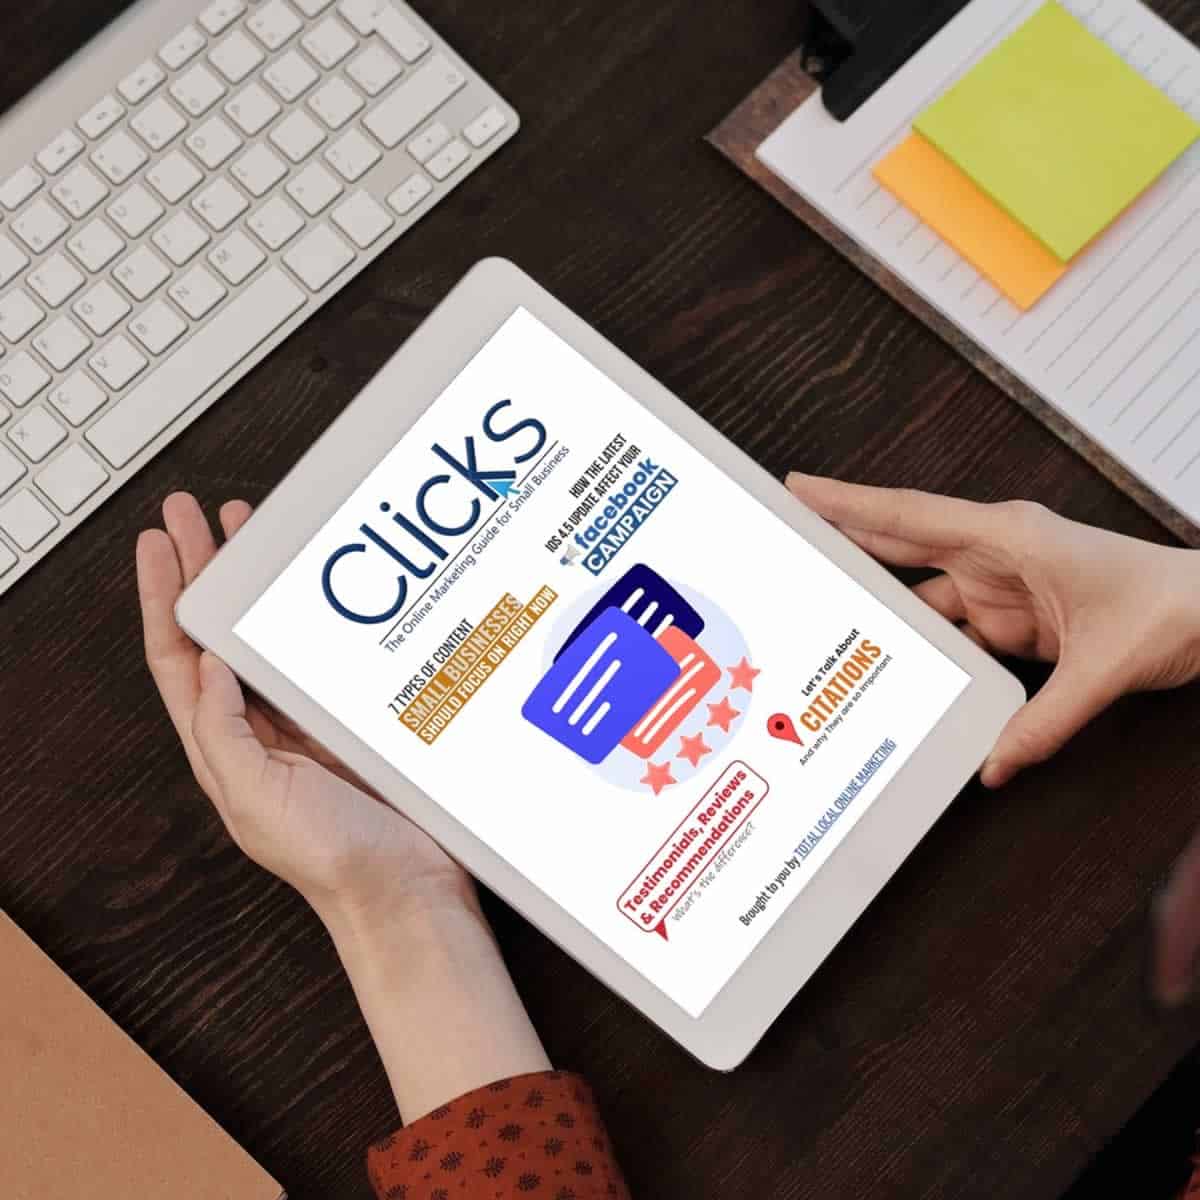 Clicks Magazine Issue 81 Tablet